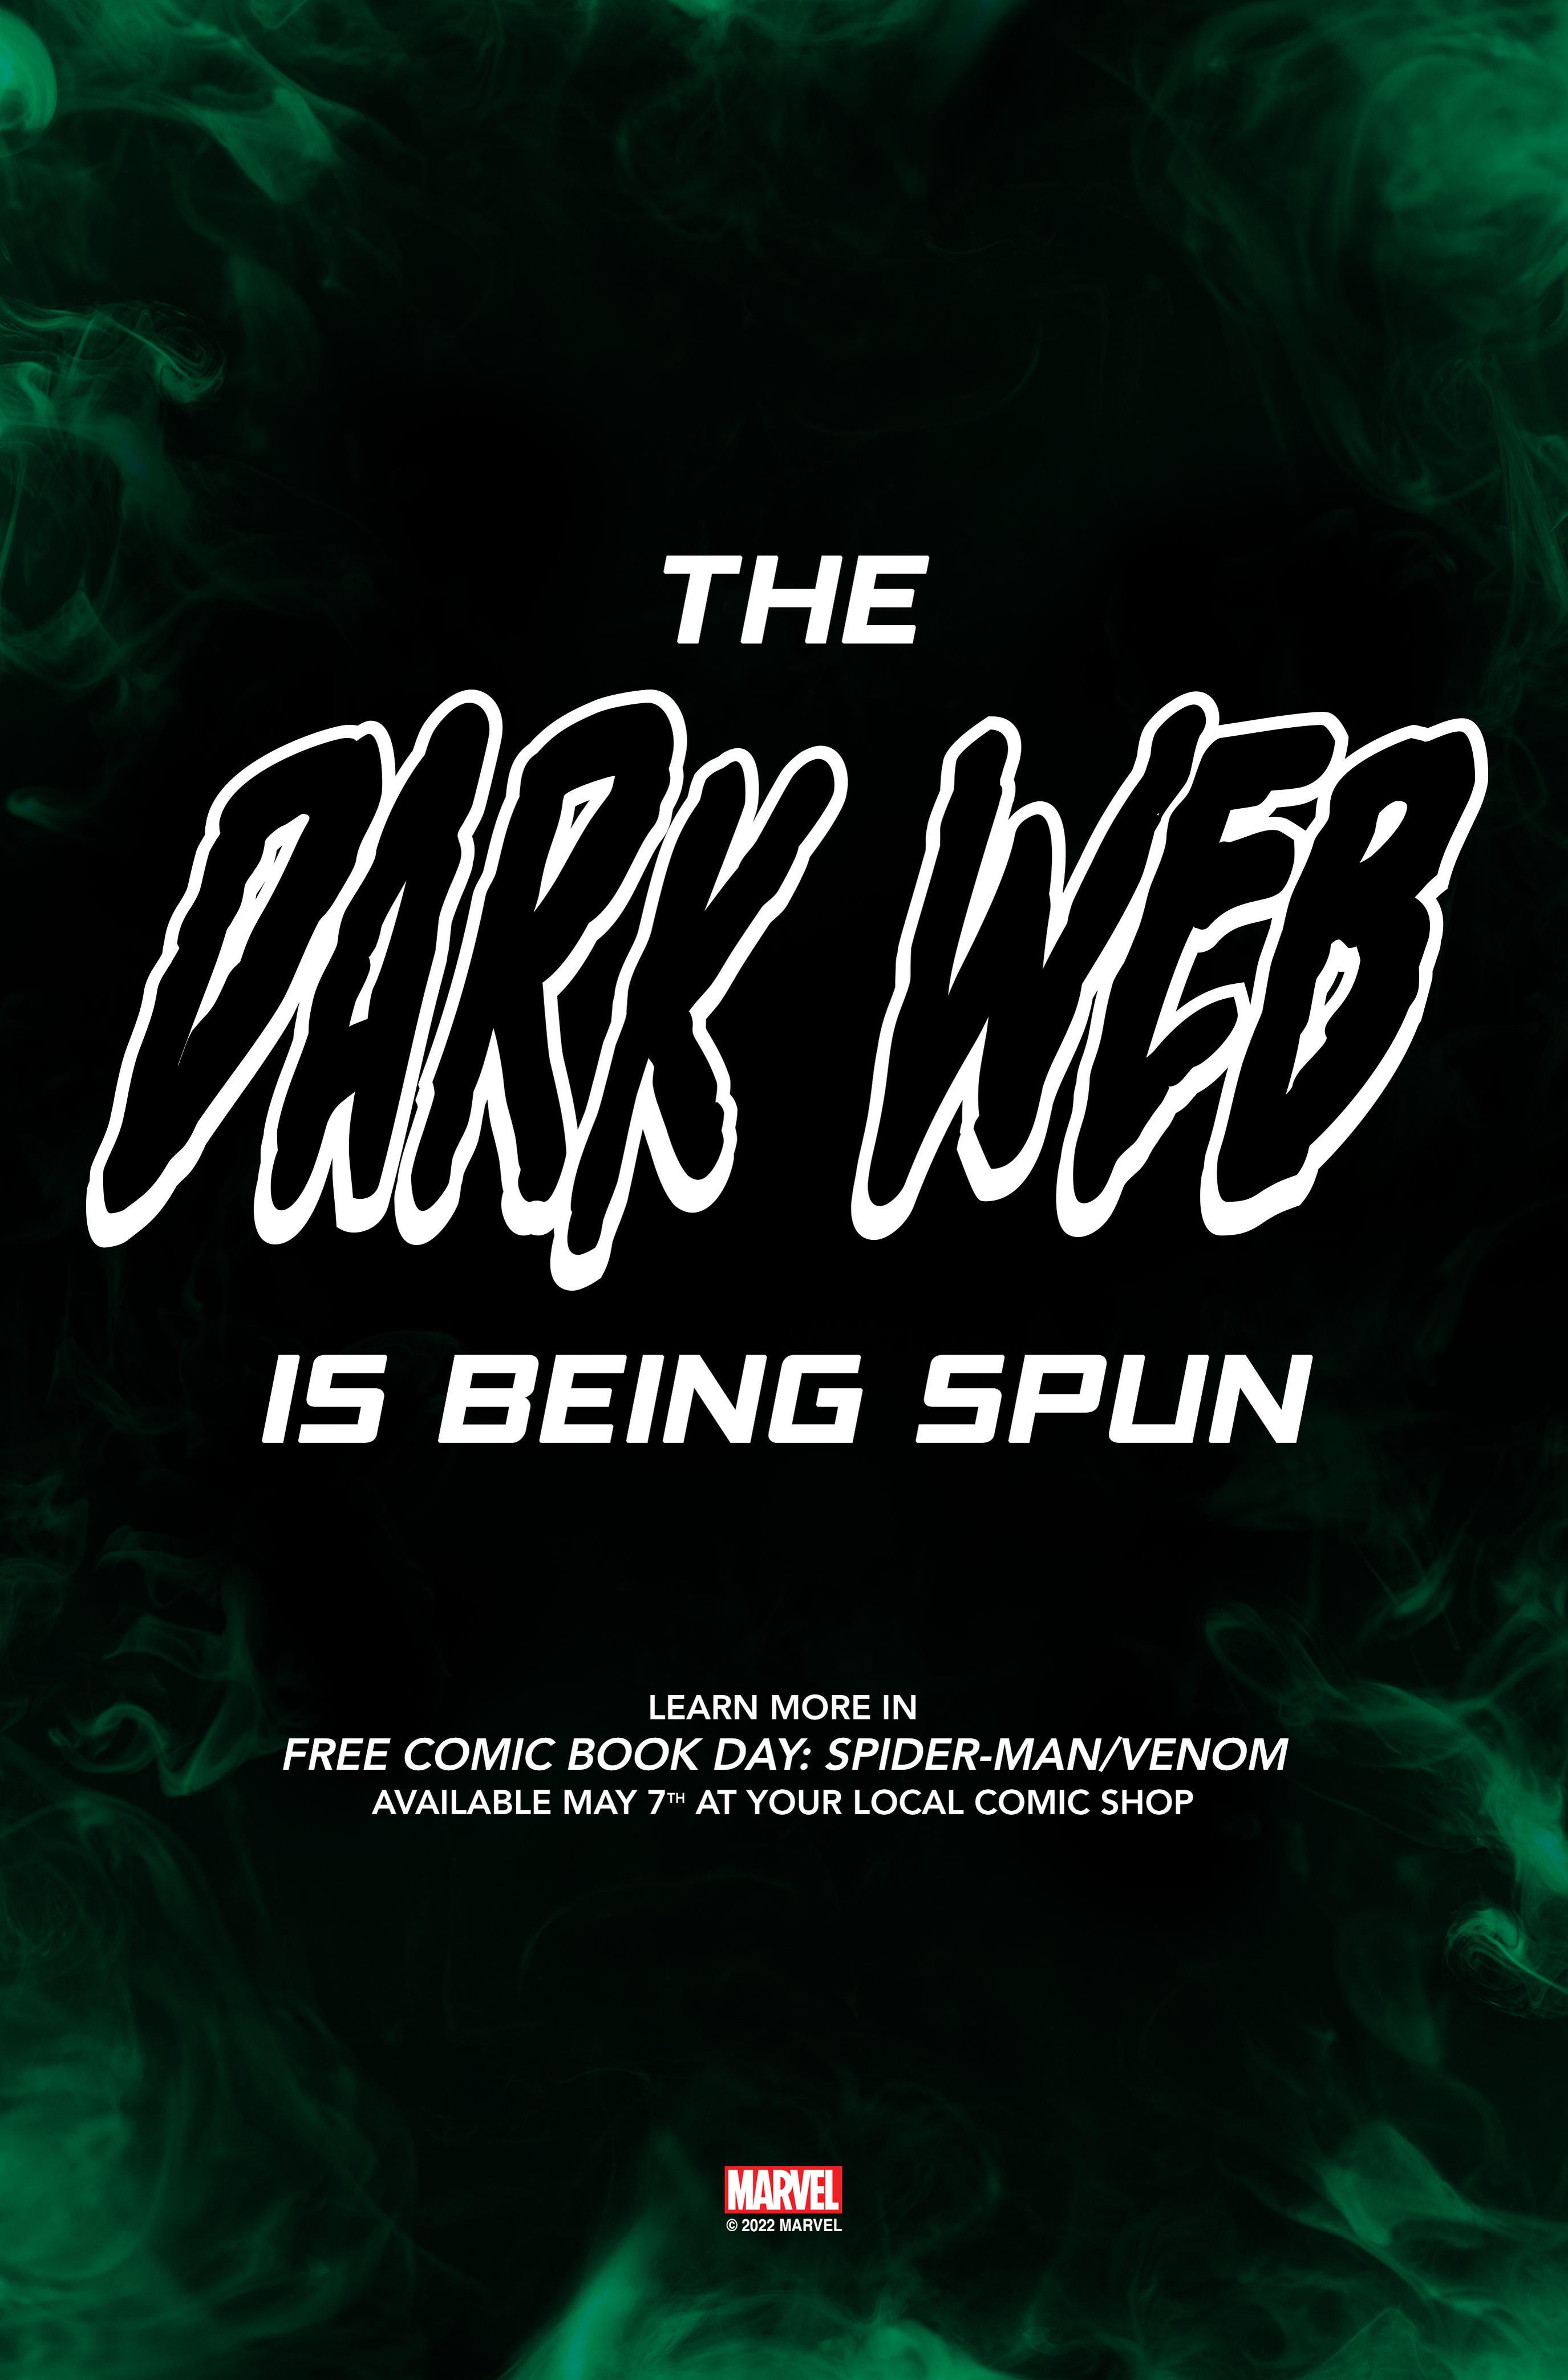 spider-man-dark-web-teaser.jpg